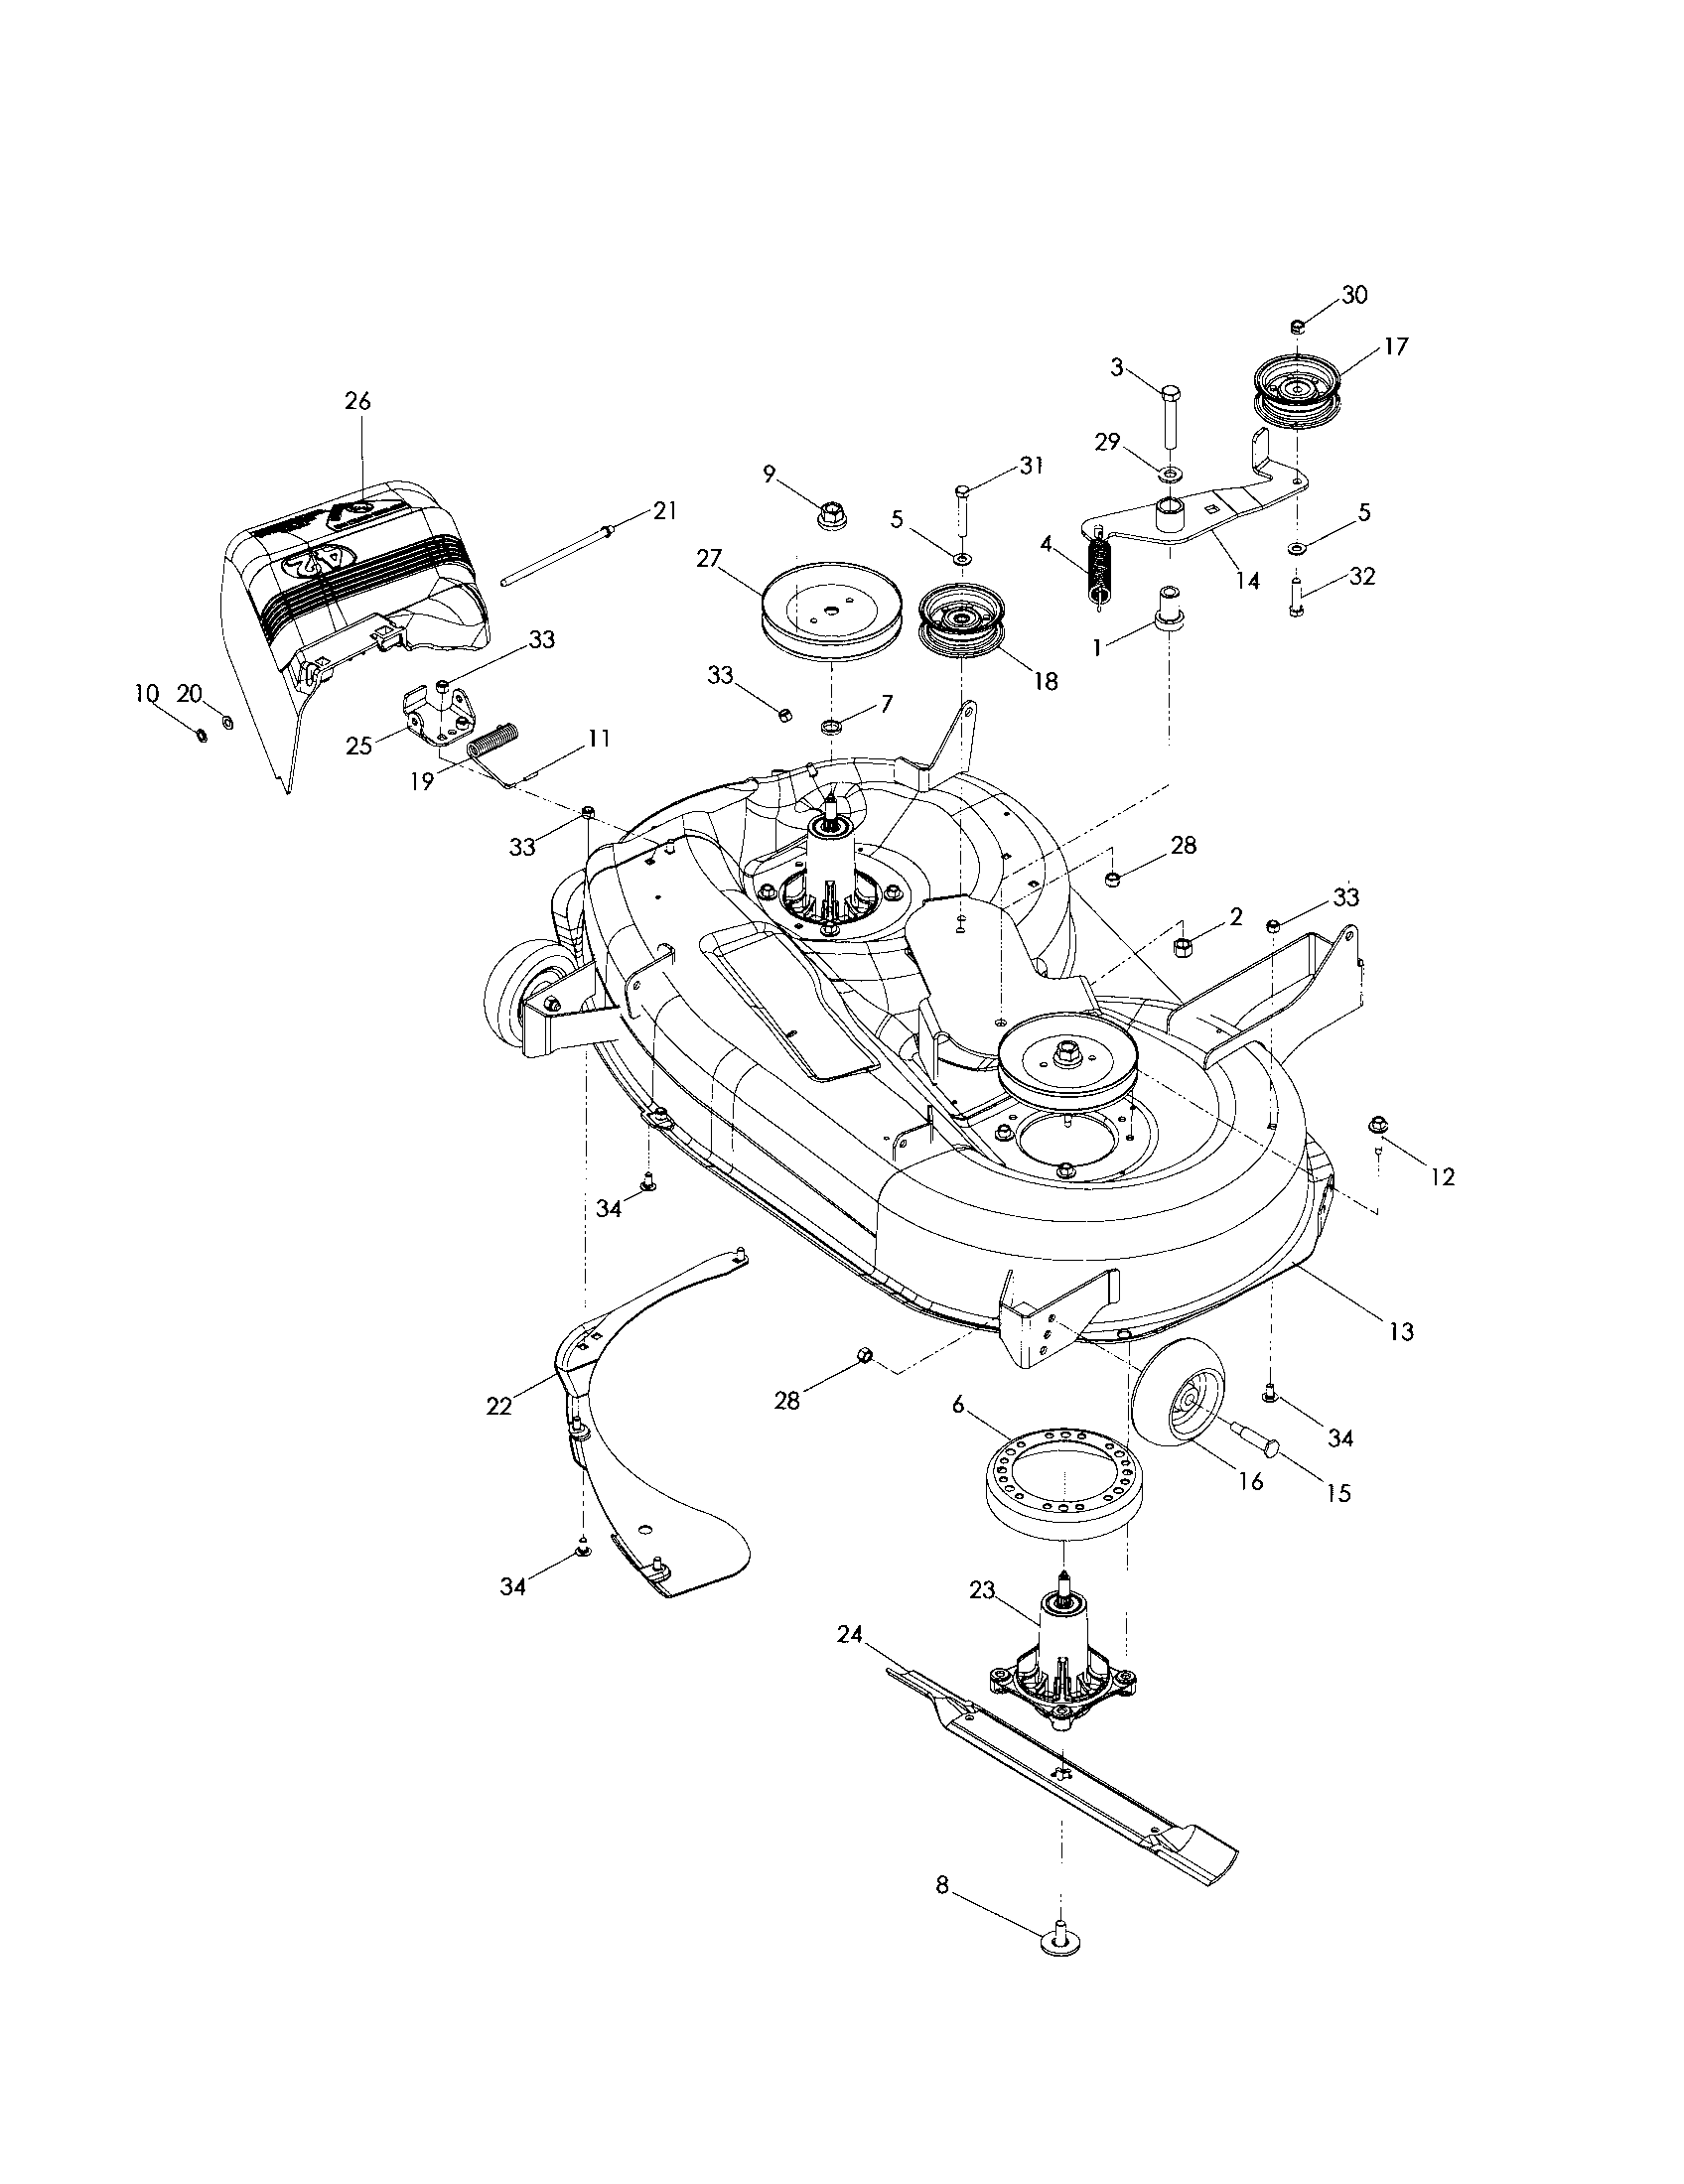 Husqvarna Zero Turn Mower Parts Schematic